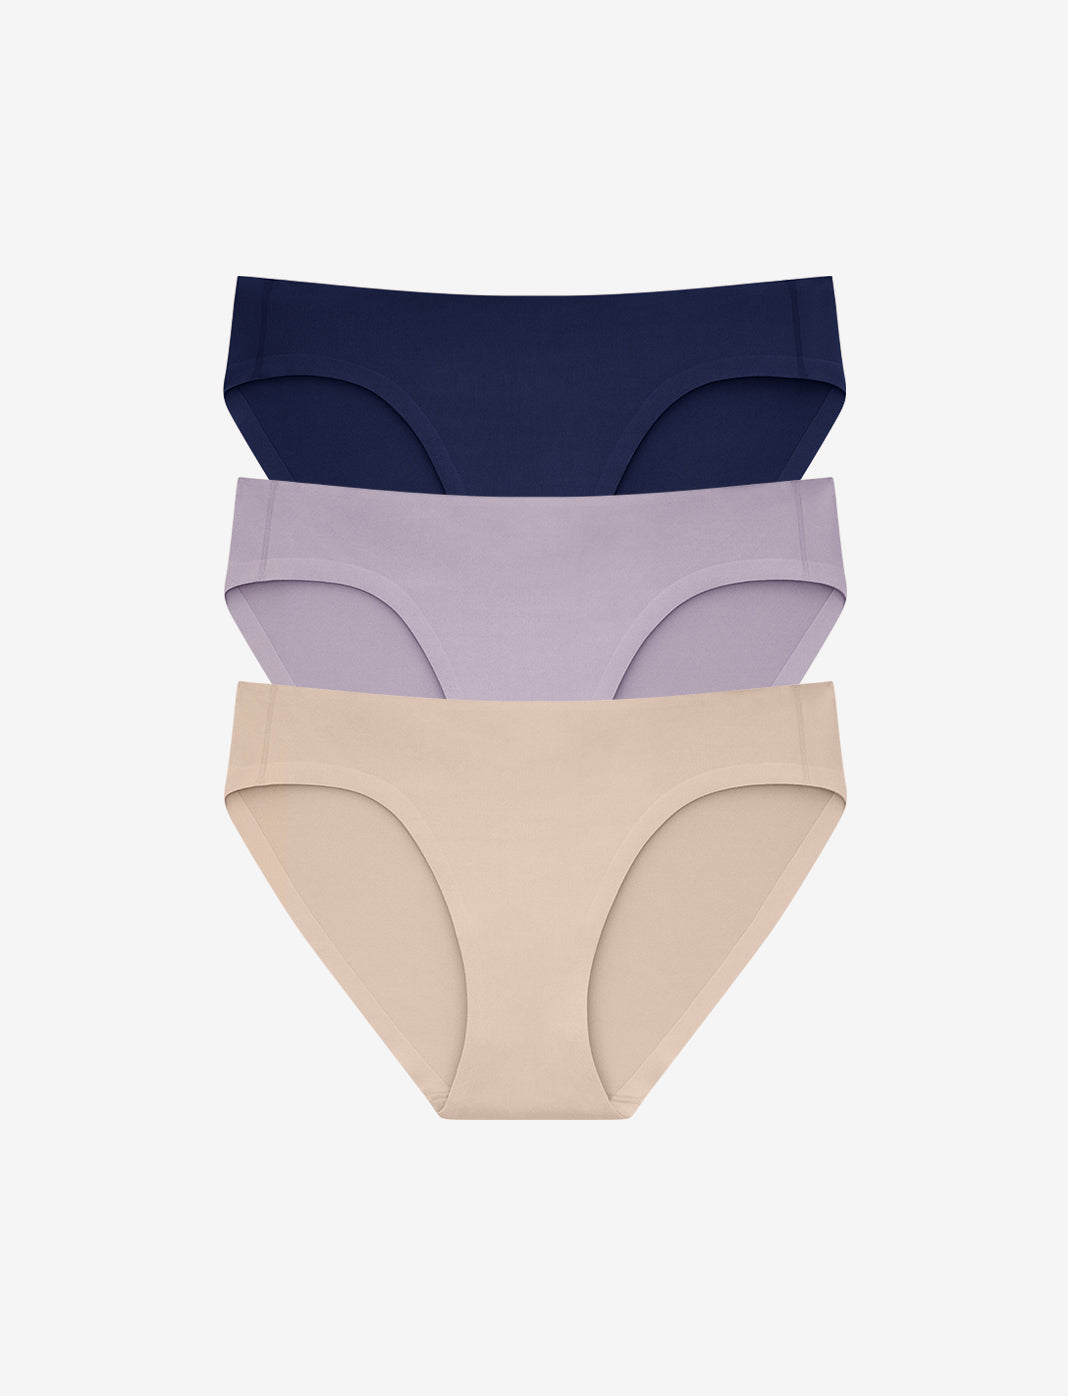 FEM Women's Underwear Seamless Briefs Panties High-Cut Seasonal Package - 4  Pack